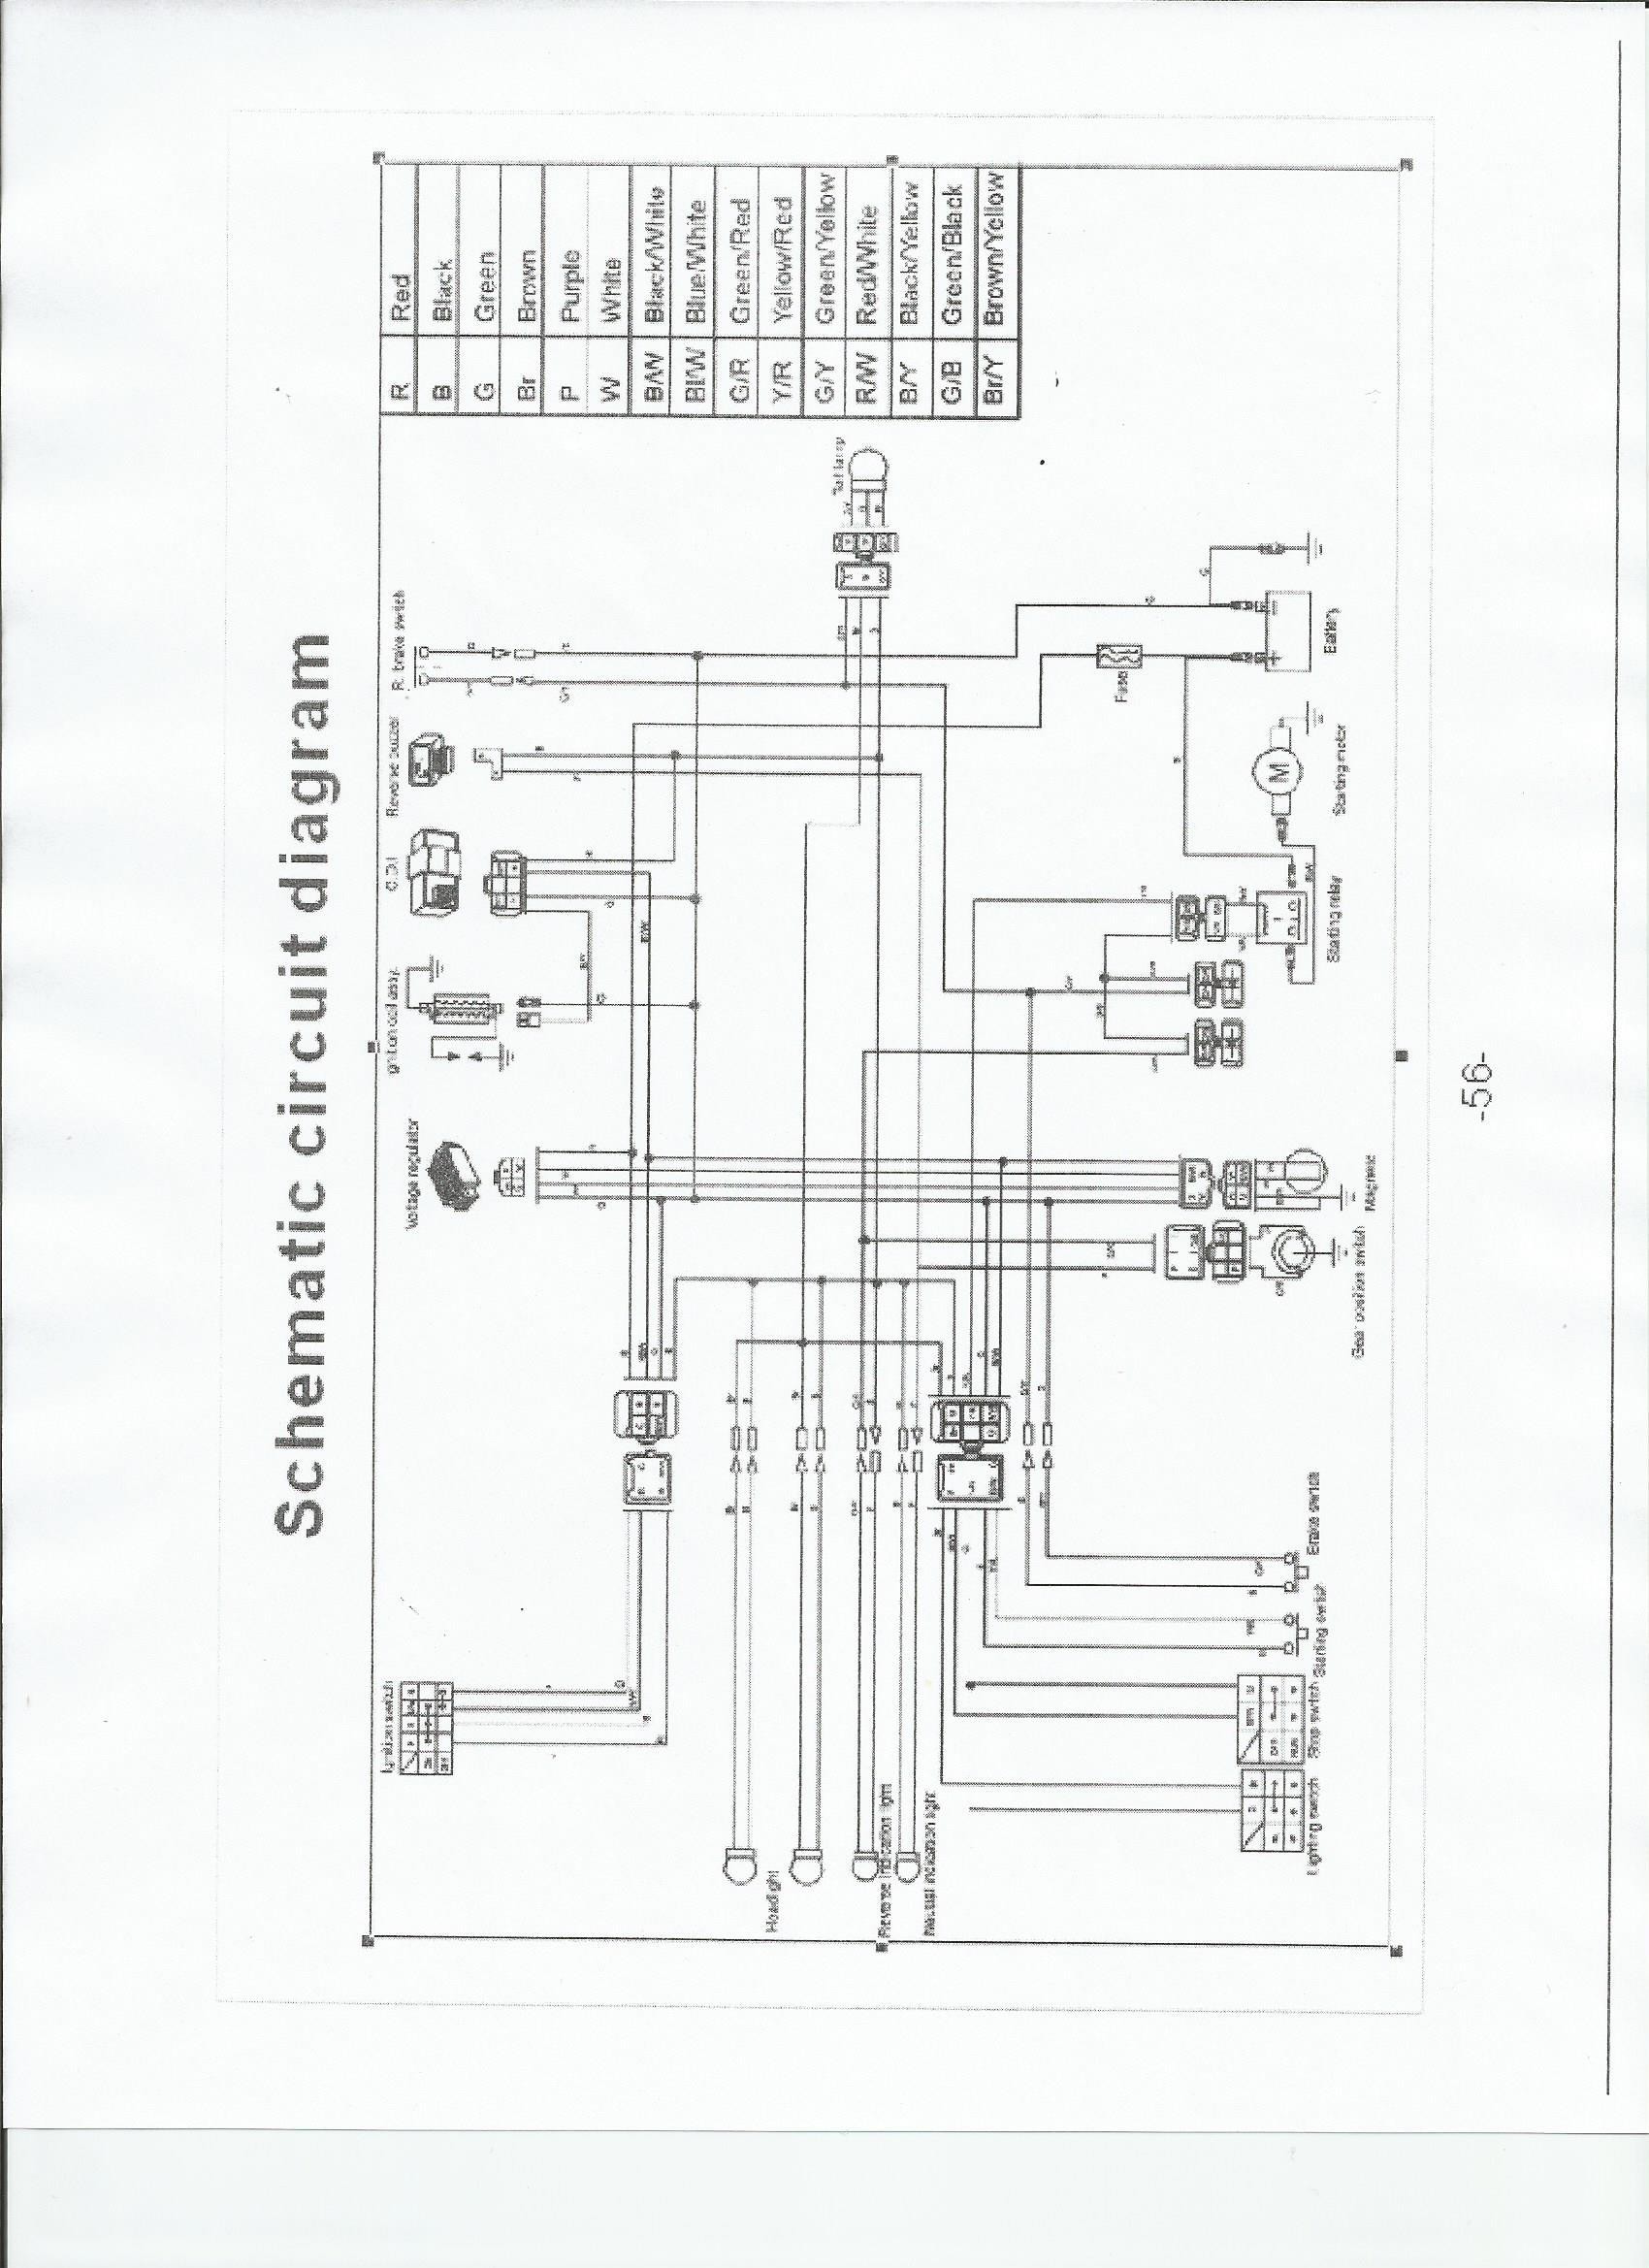 Chinese atv Wiring Schematic Bearcat 110cc atv Wiring Diagram Wiring Diagrams Schematics Of Chinese atv Wiring Schematic